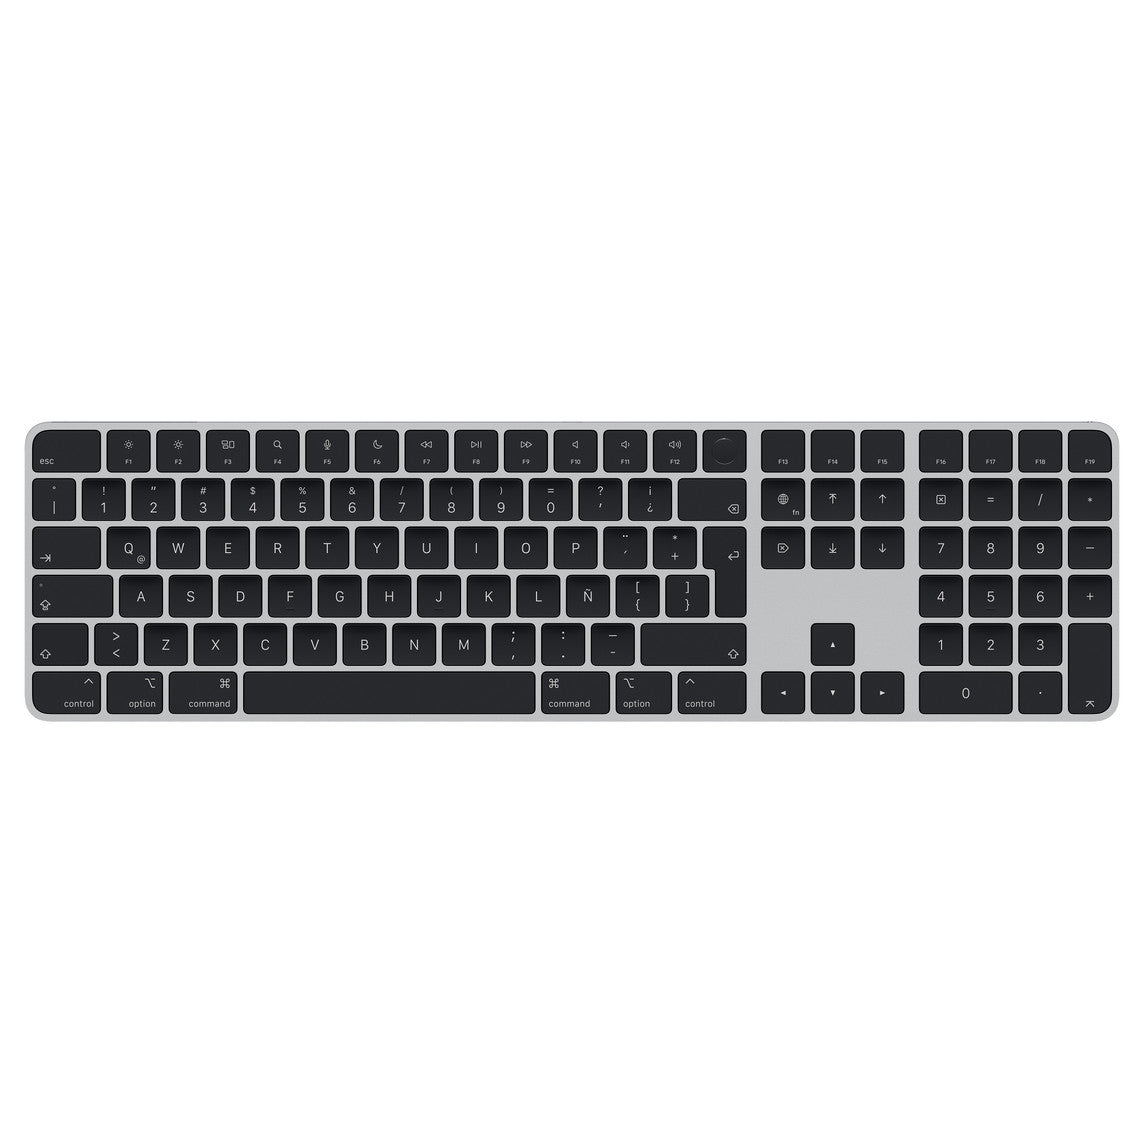 Tastierë Apple Magic Keyboard with Touch ID and Numeric Keypad - Black Keys, International English (Used)